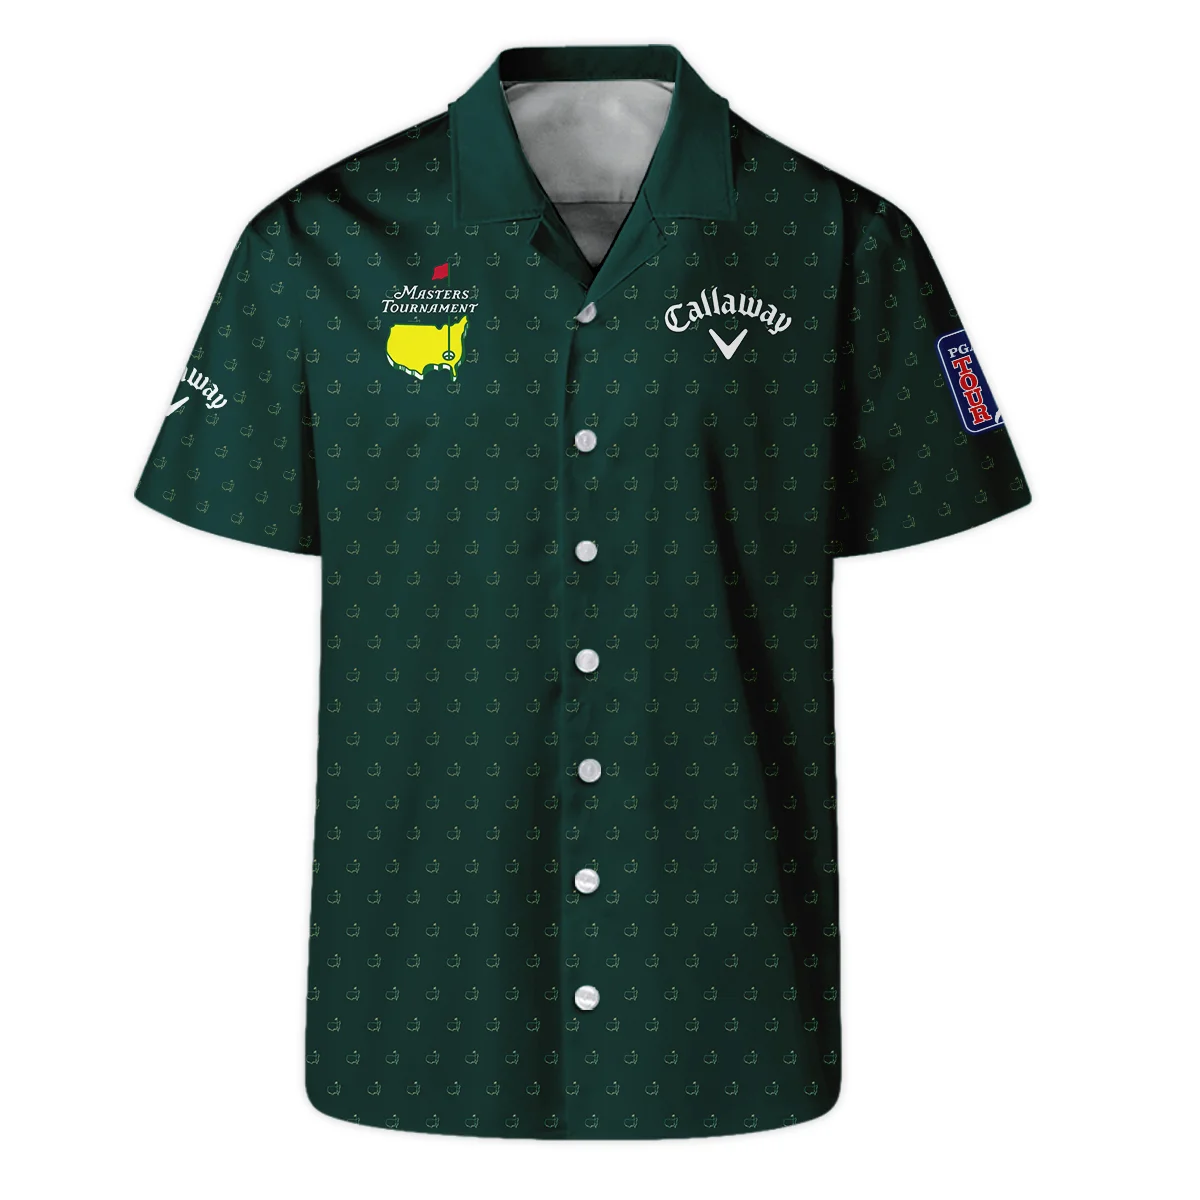 Golf Masters Tournament Callaway Zipper Polo Shirt Logo Pattern Gold Green Golf Sports All Over Print Zipper Polo Shirt For Men